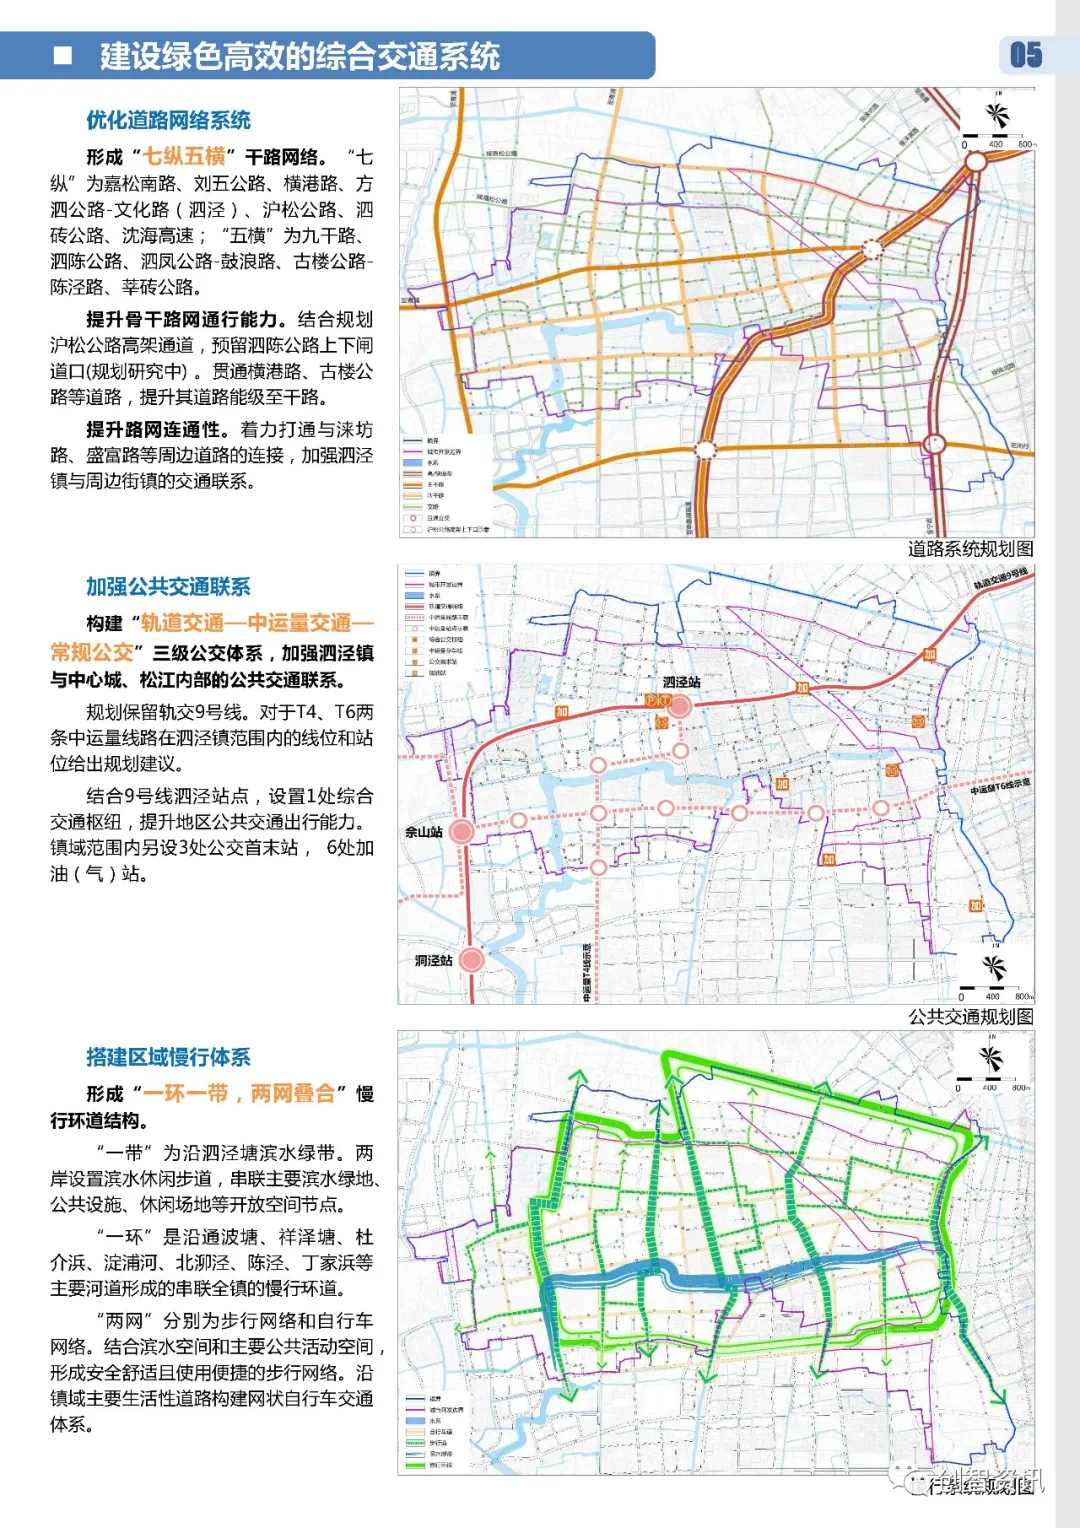 最新泗泾镇总体规划20035方案的公示